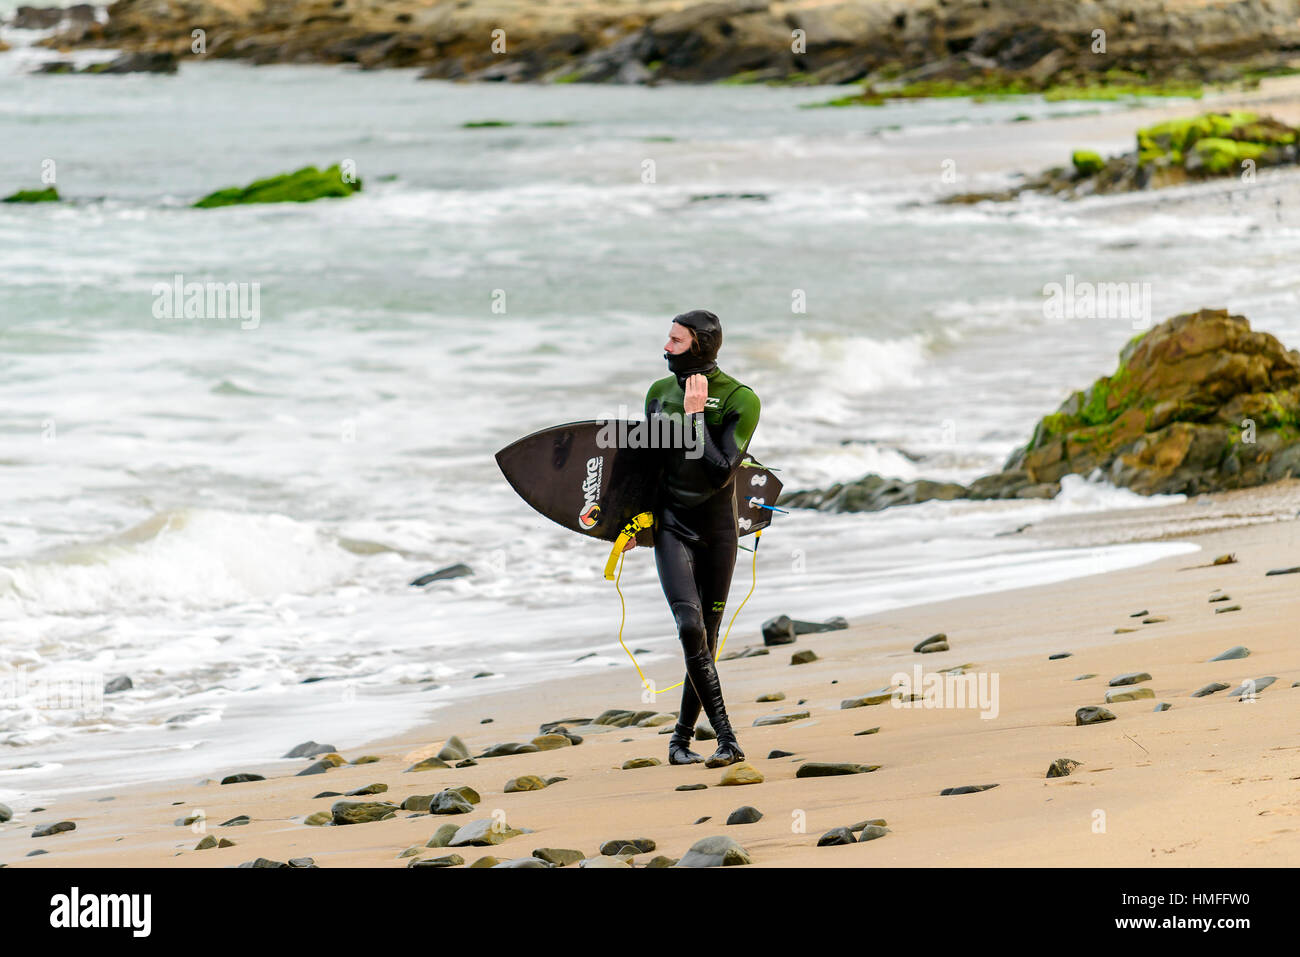 Middleton, Australien - 14. August 2016: Surfer hält seine Surf-Board bei Middleton Beach an einem Tag. Middleton ist einer der bekanntesten Orte für s Stockfoto